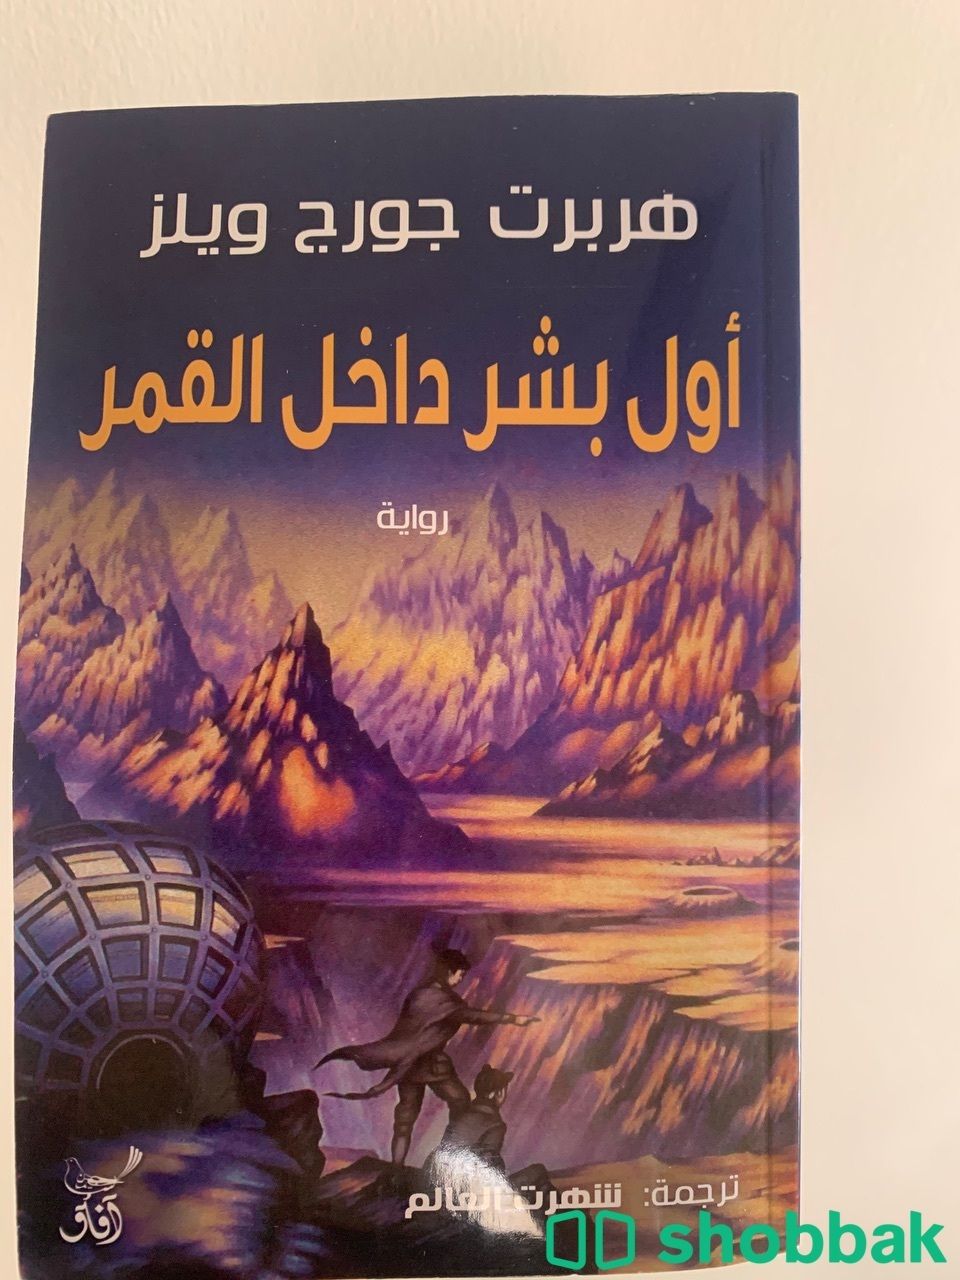 رواية "أول بشر داخل القمر" Shobbak Saudi Arabia